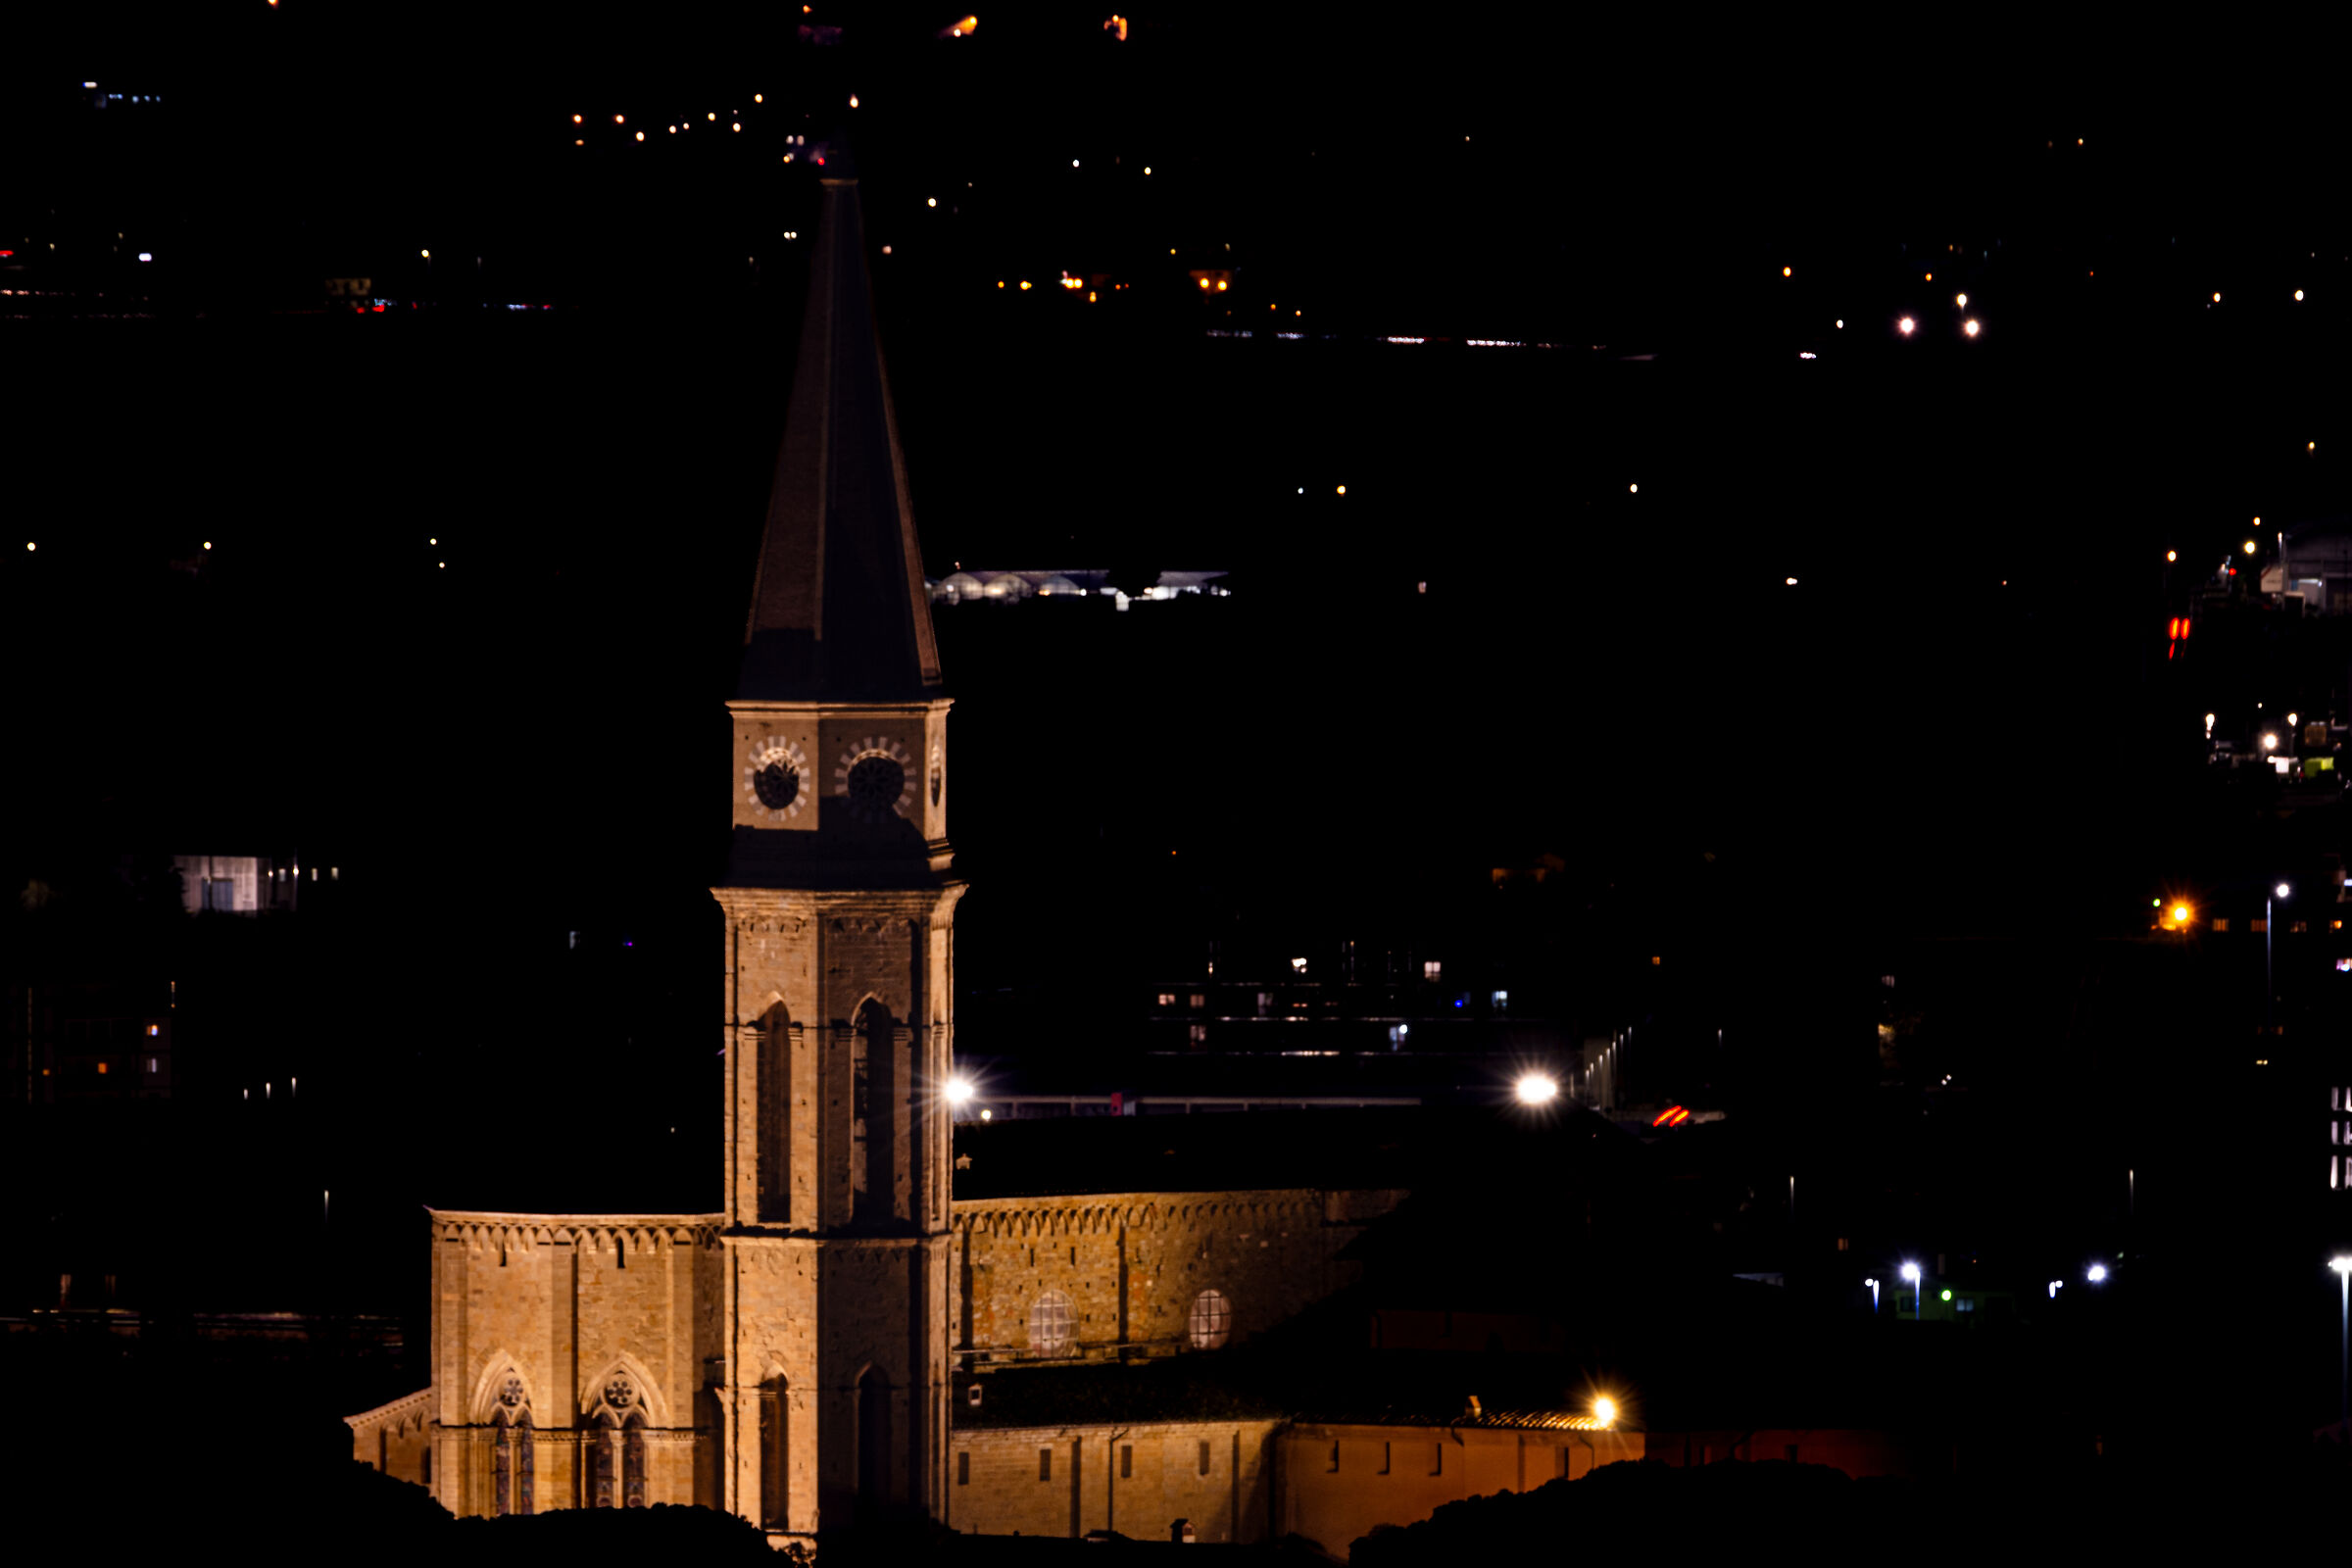 The Duomo at night...